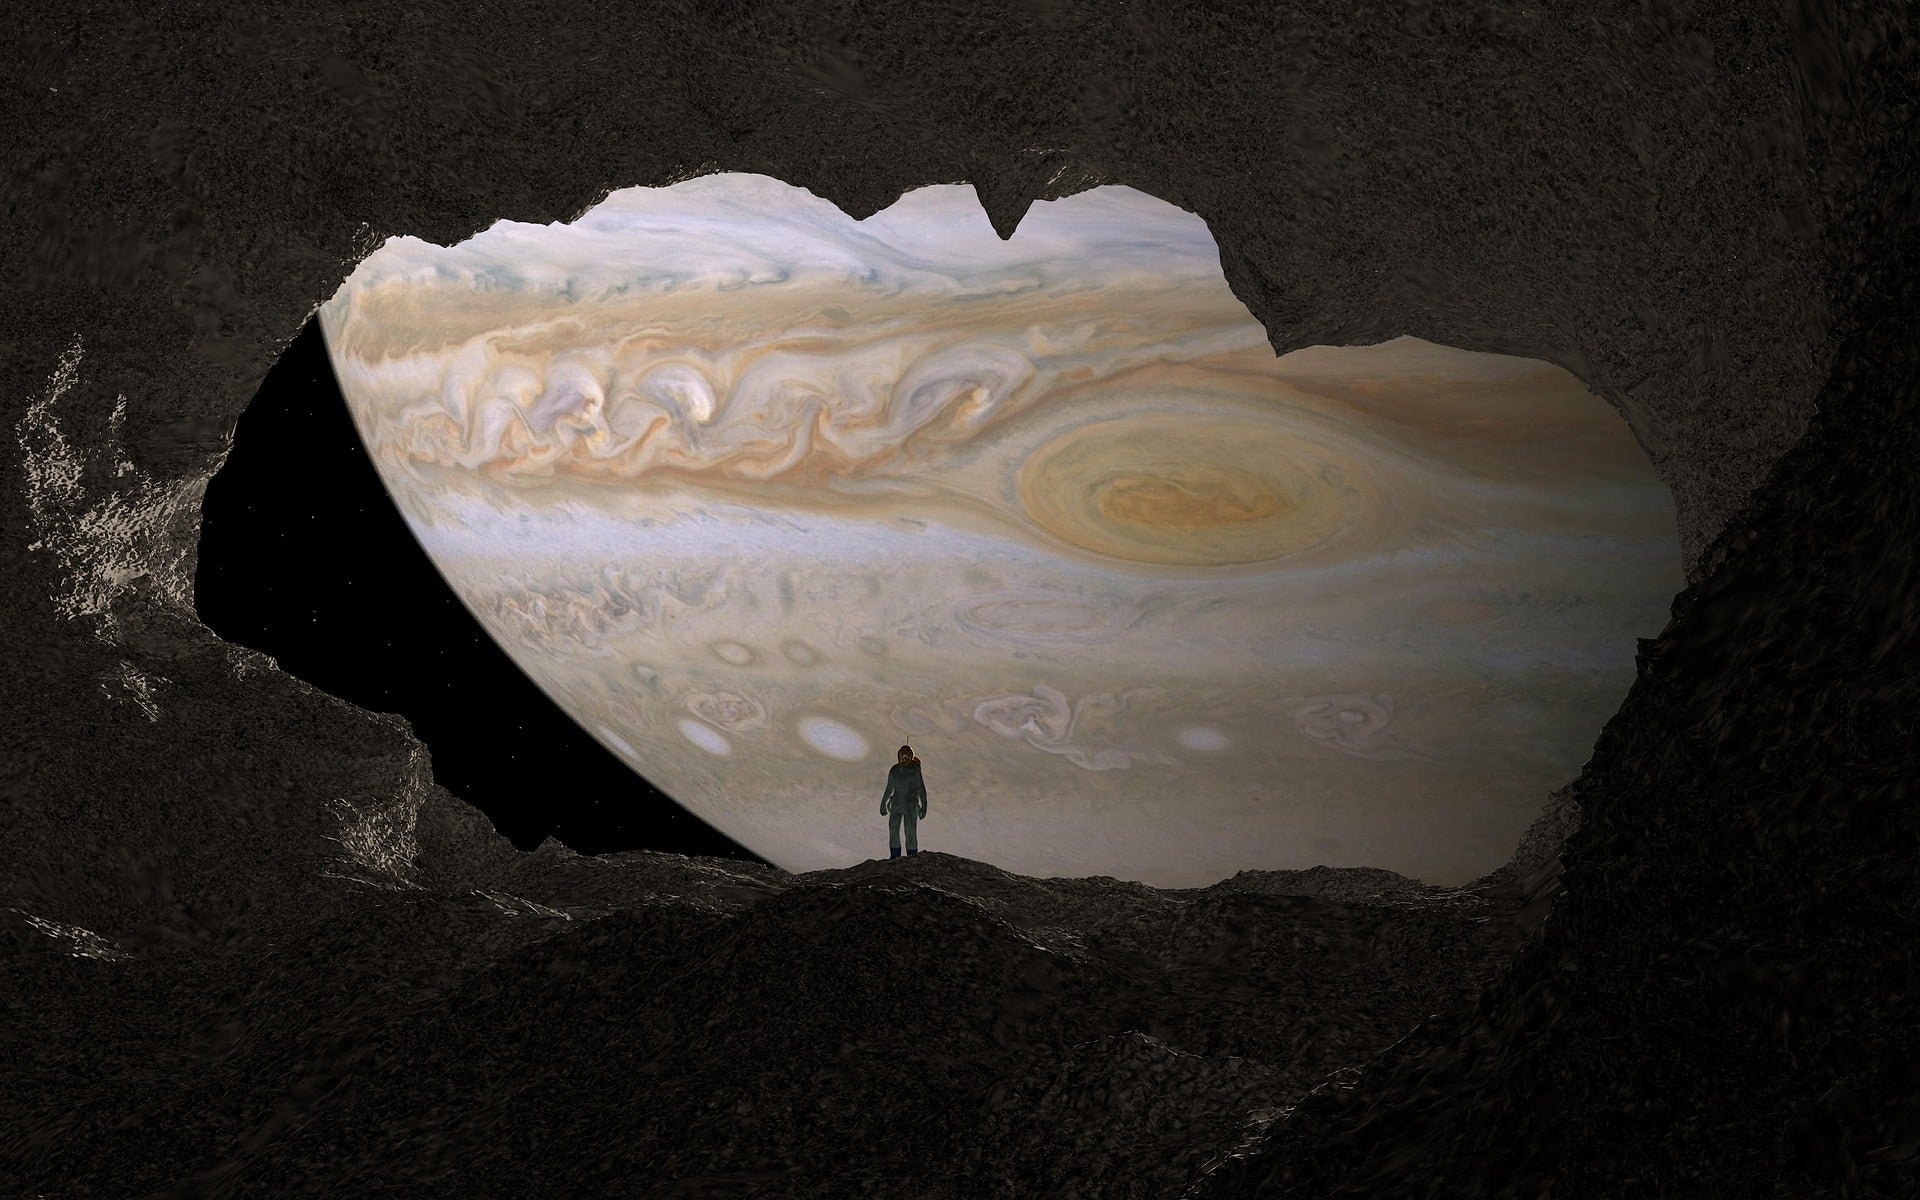 Jupiter retrograde in Pisces